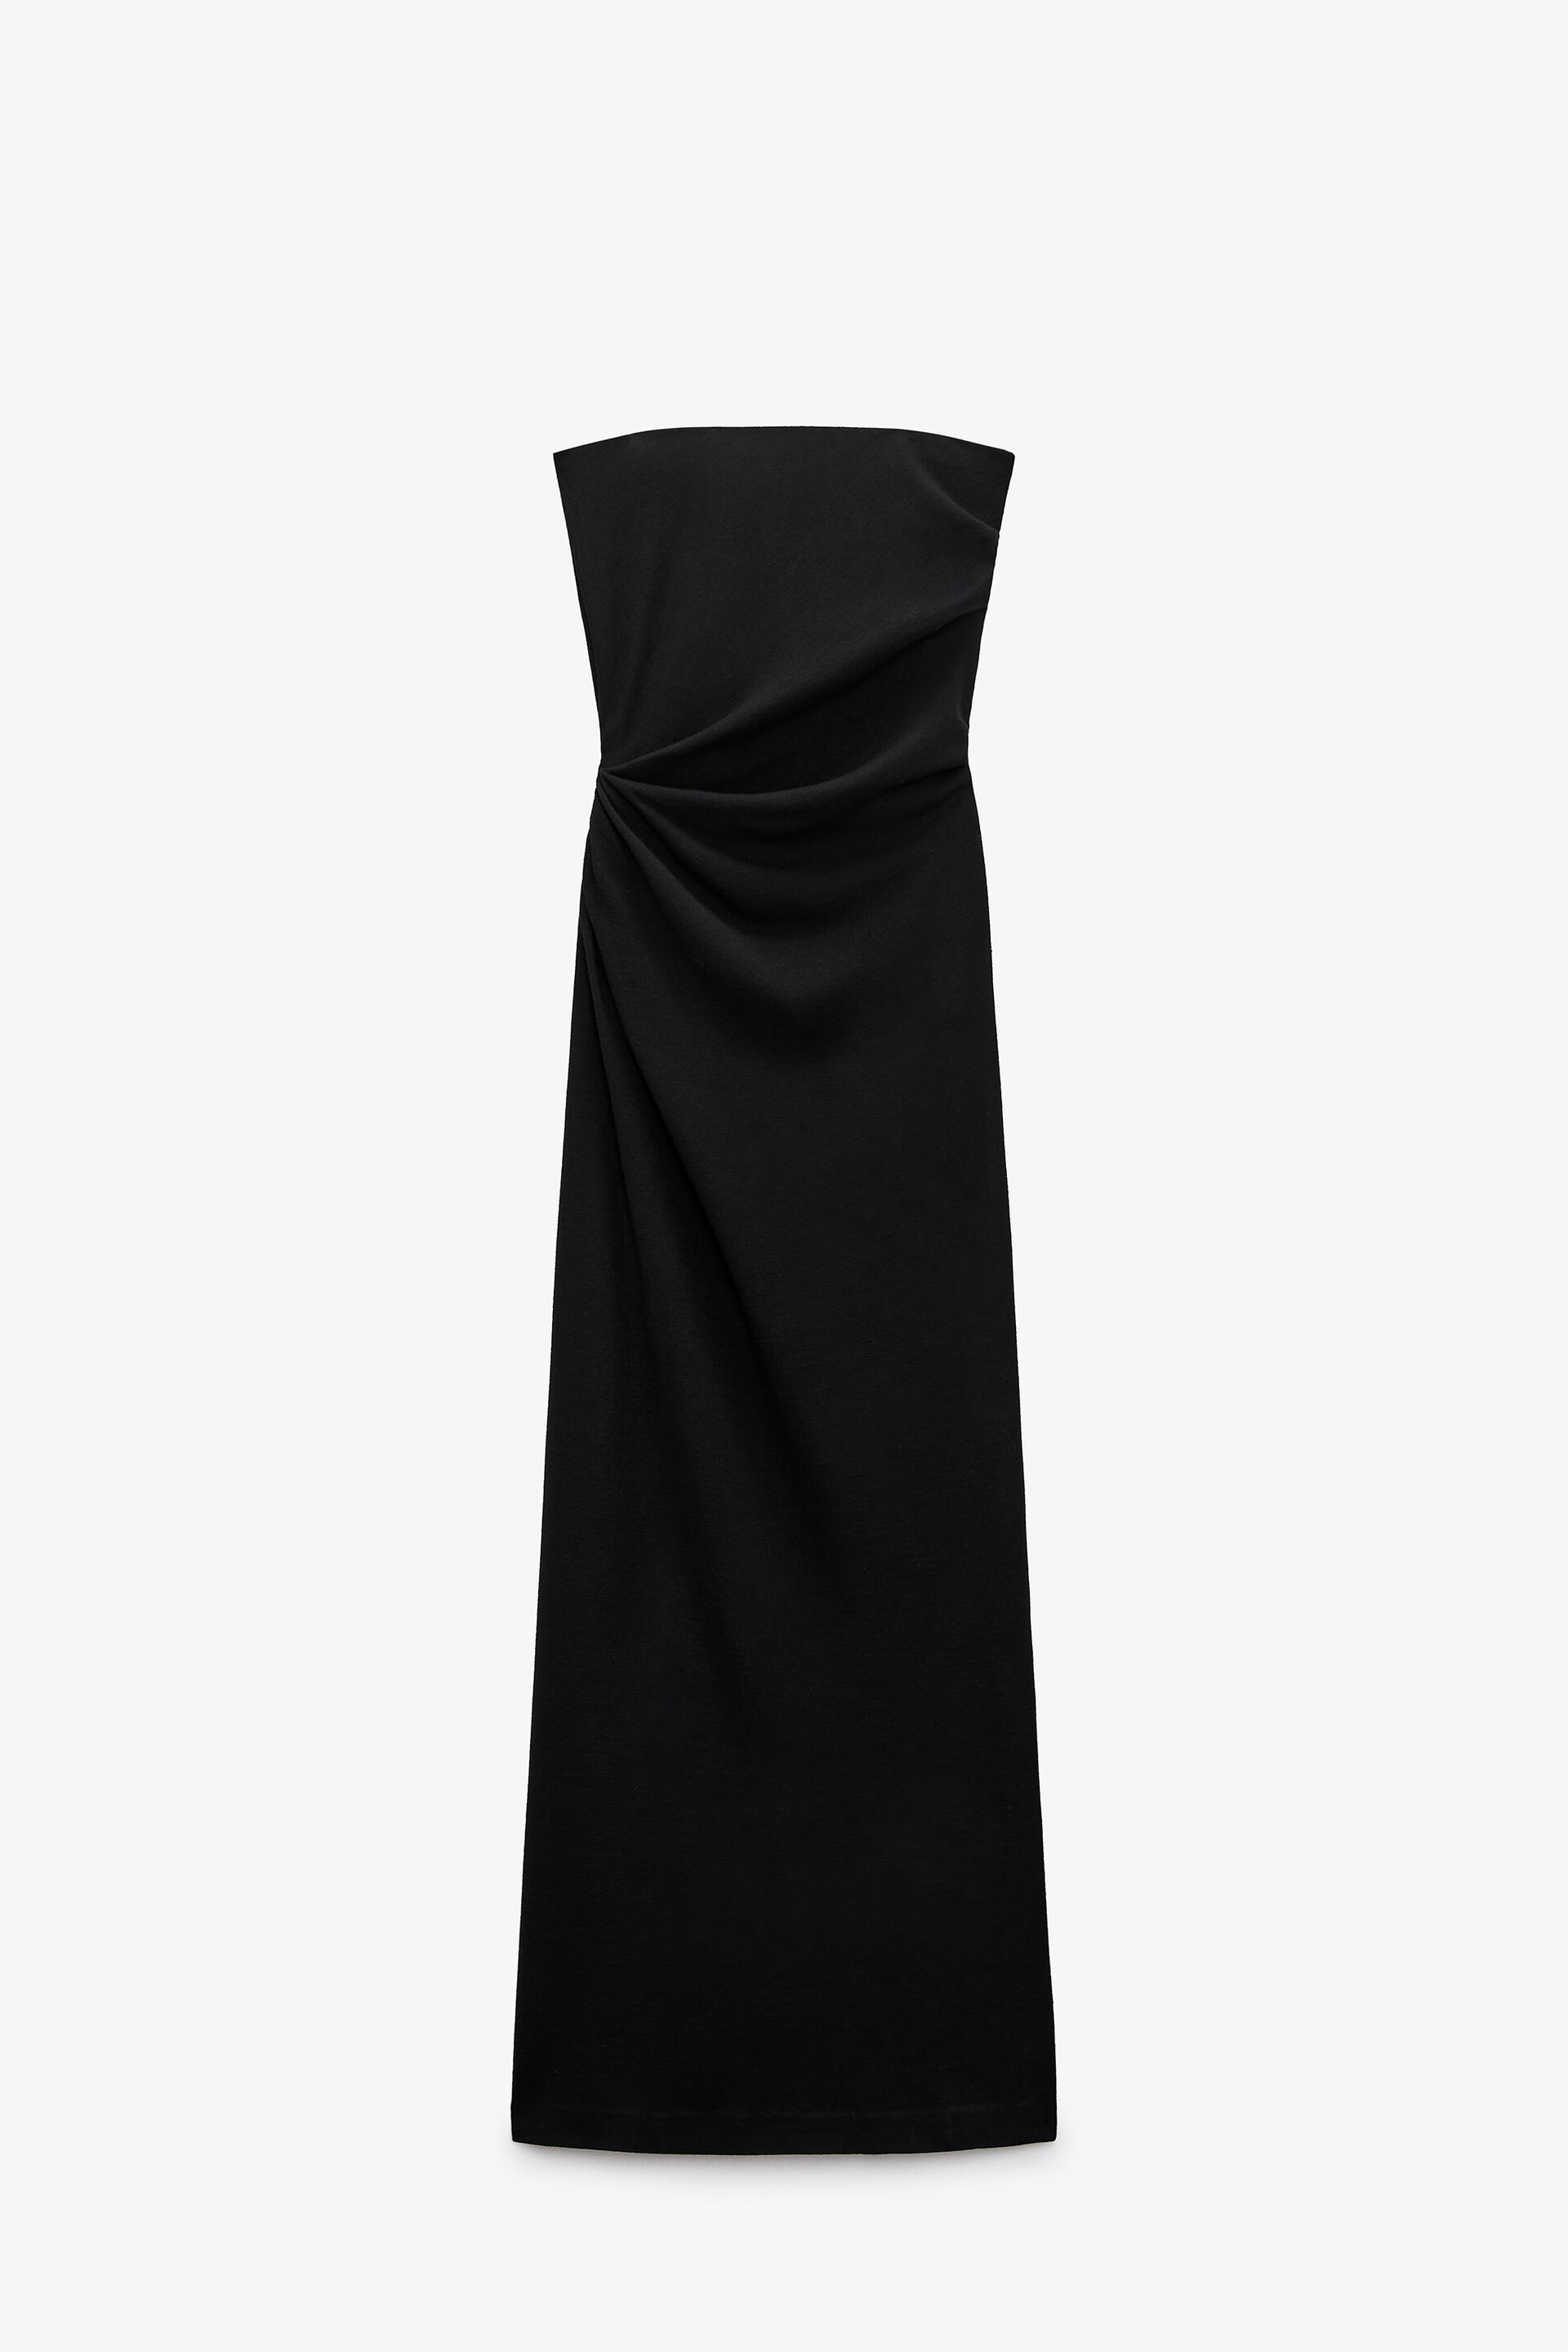 Платье женское ZARA 02096704 черное L (доставка из-за рубежа)